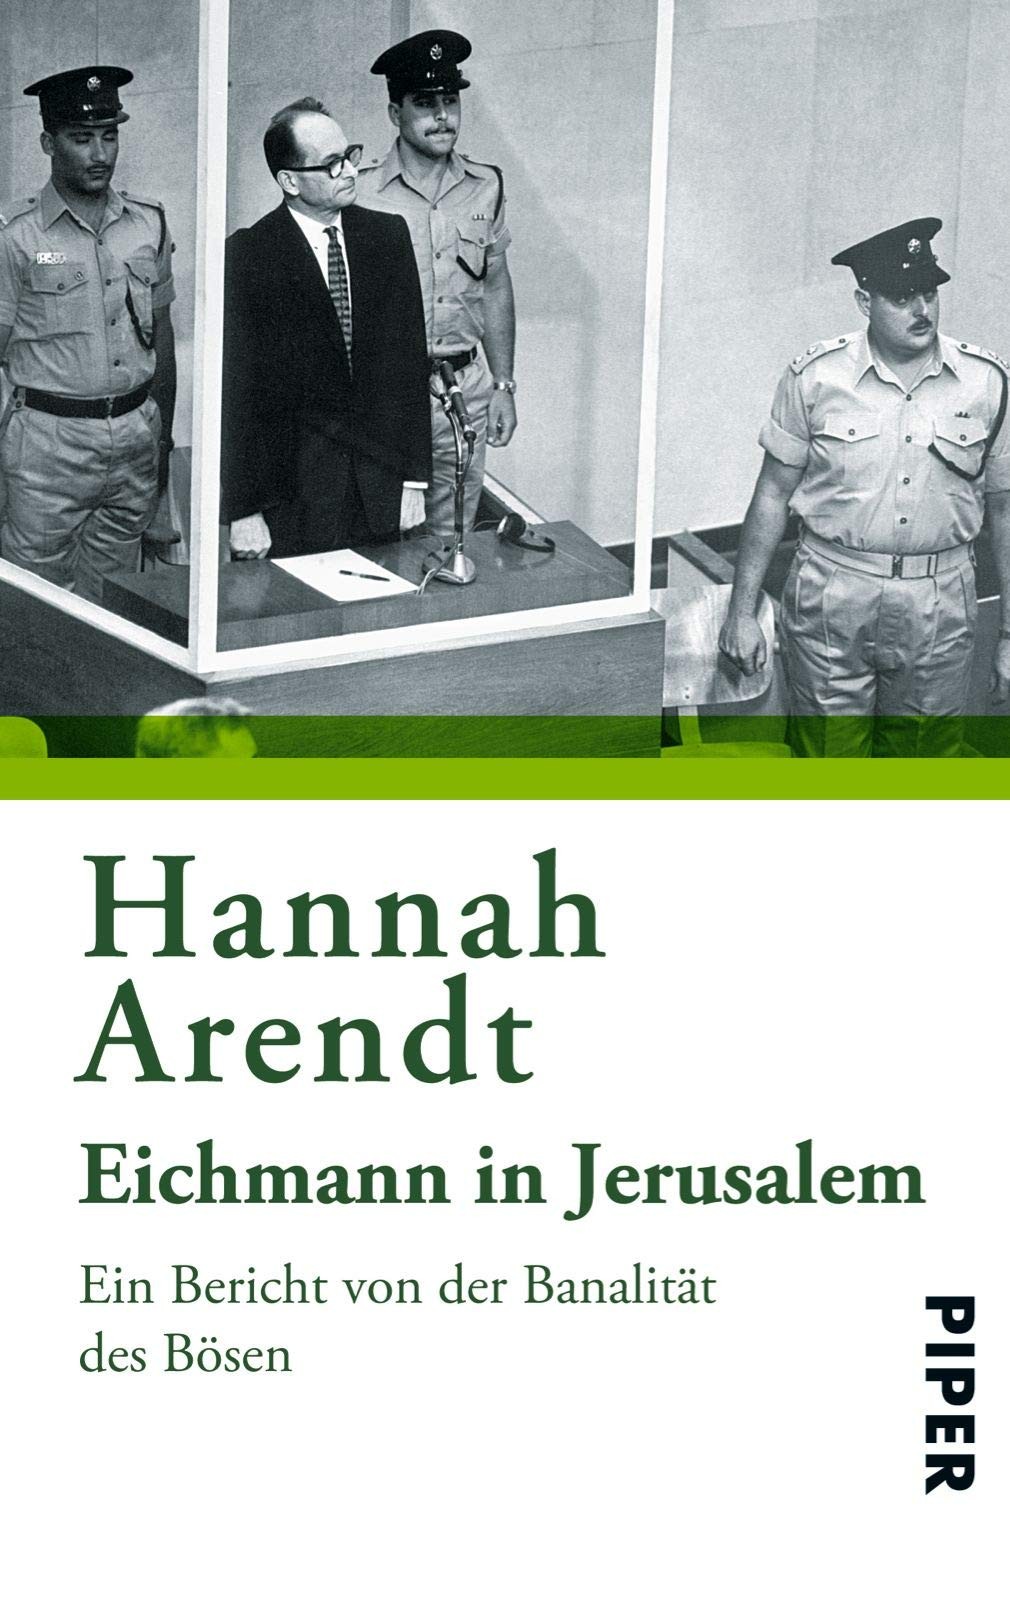 Eichmann in Jerusalem Ein Bericht von der Banalität des Bösen by Hannah Arendt